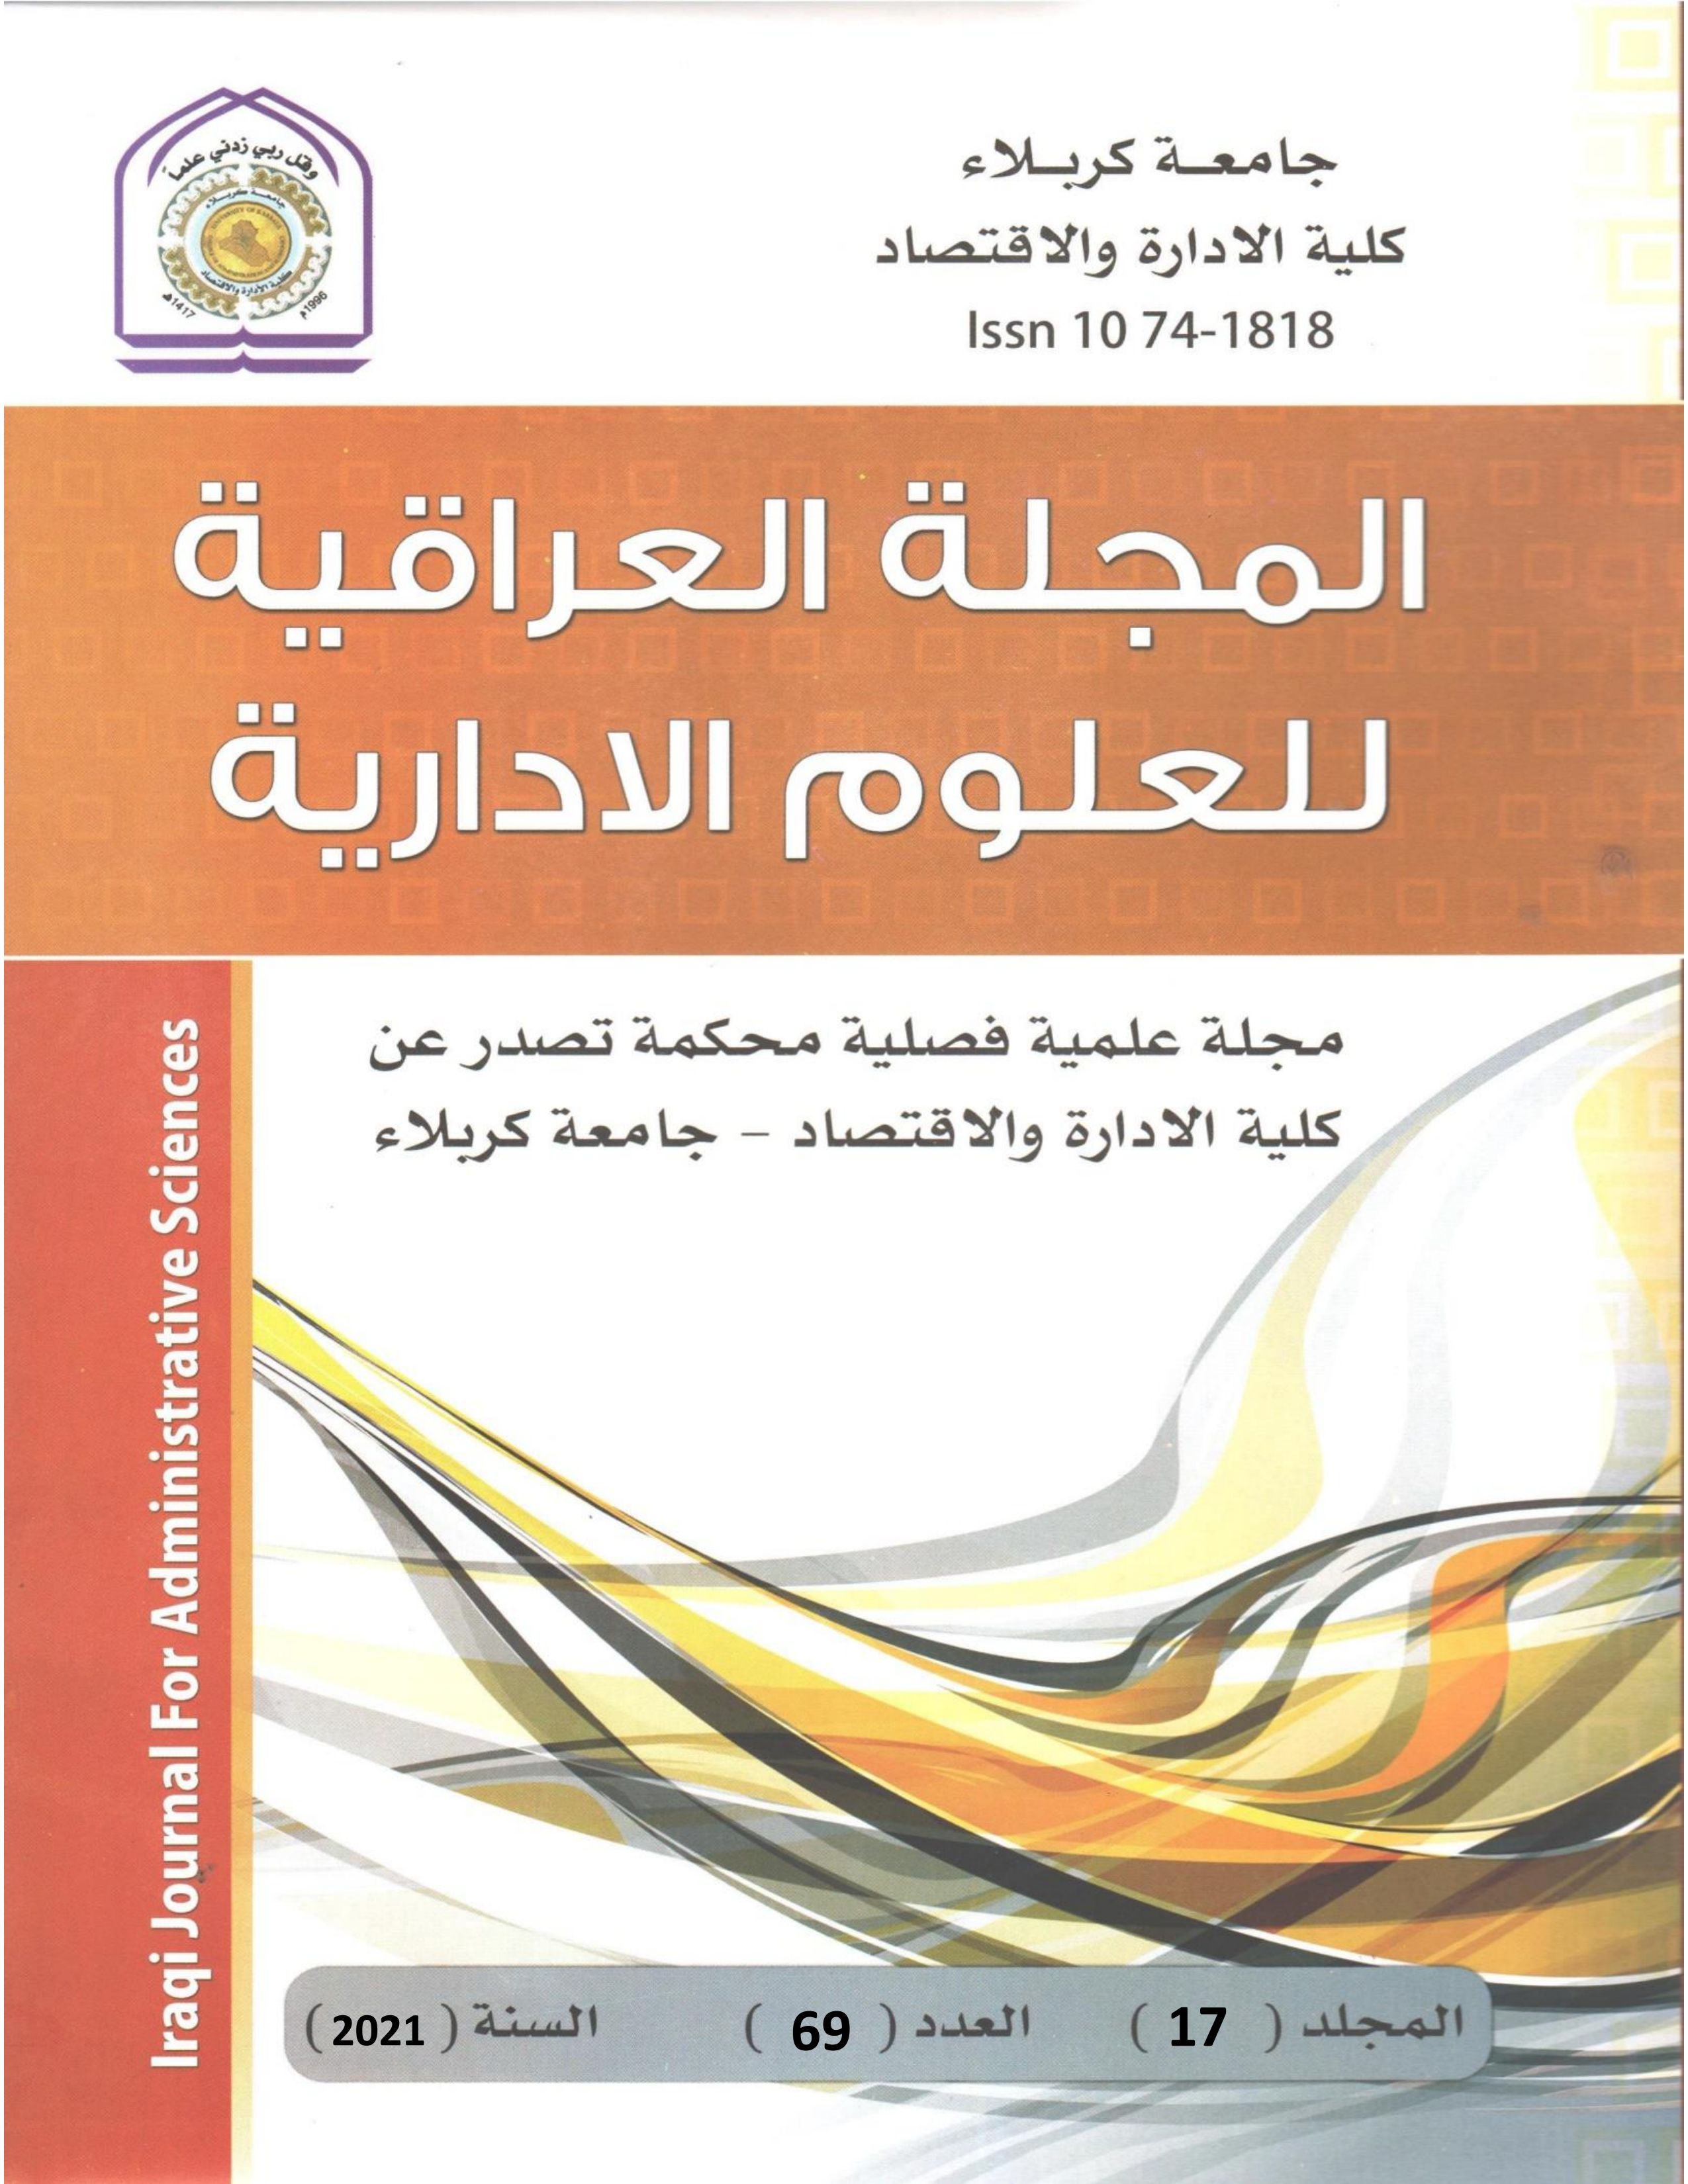 					معاينة مجلد 17 عدد 67 (2021): المجلة العراقية للعلوم الادارية
				